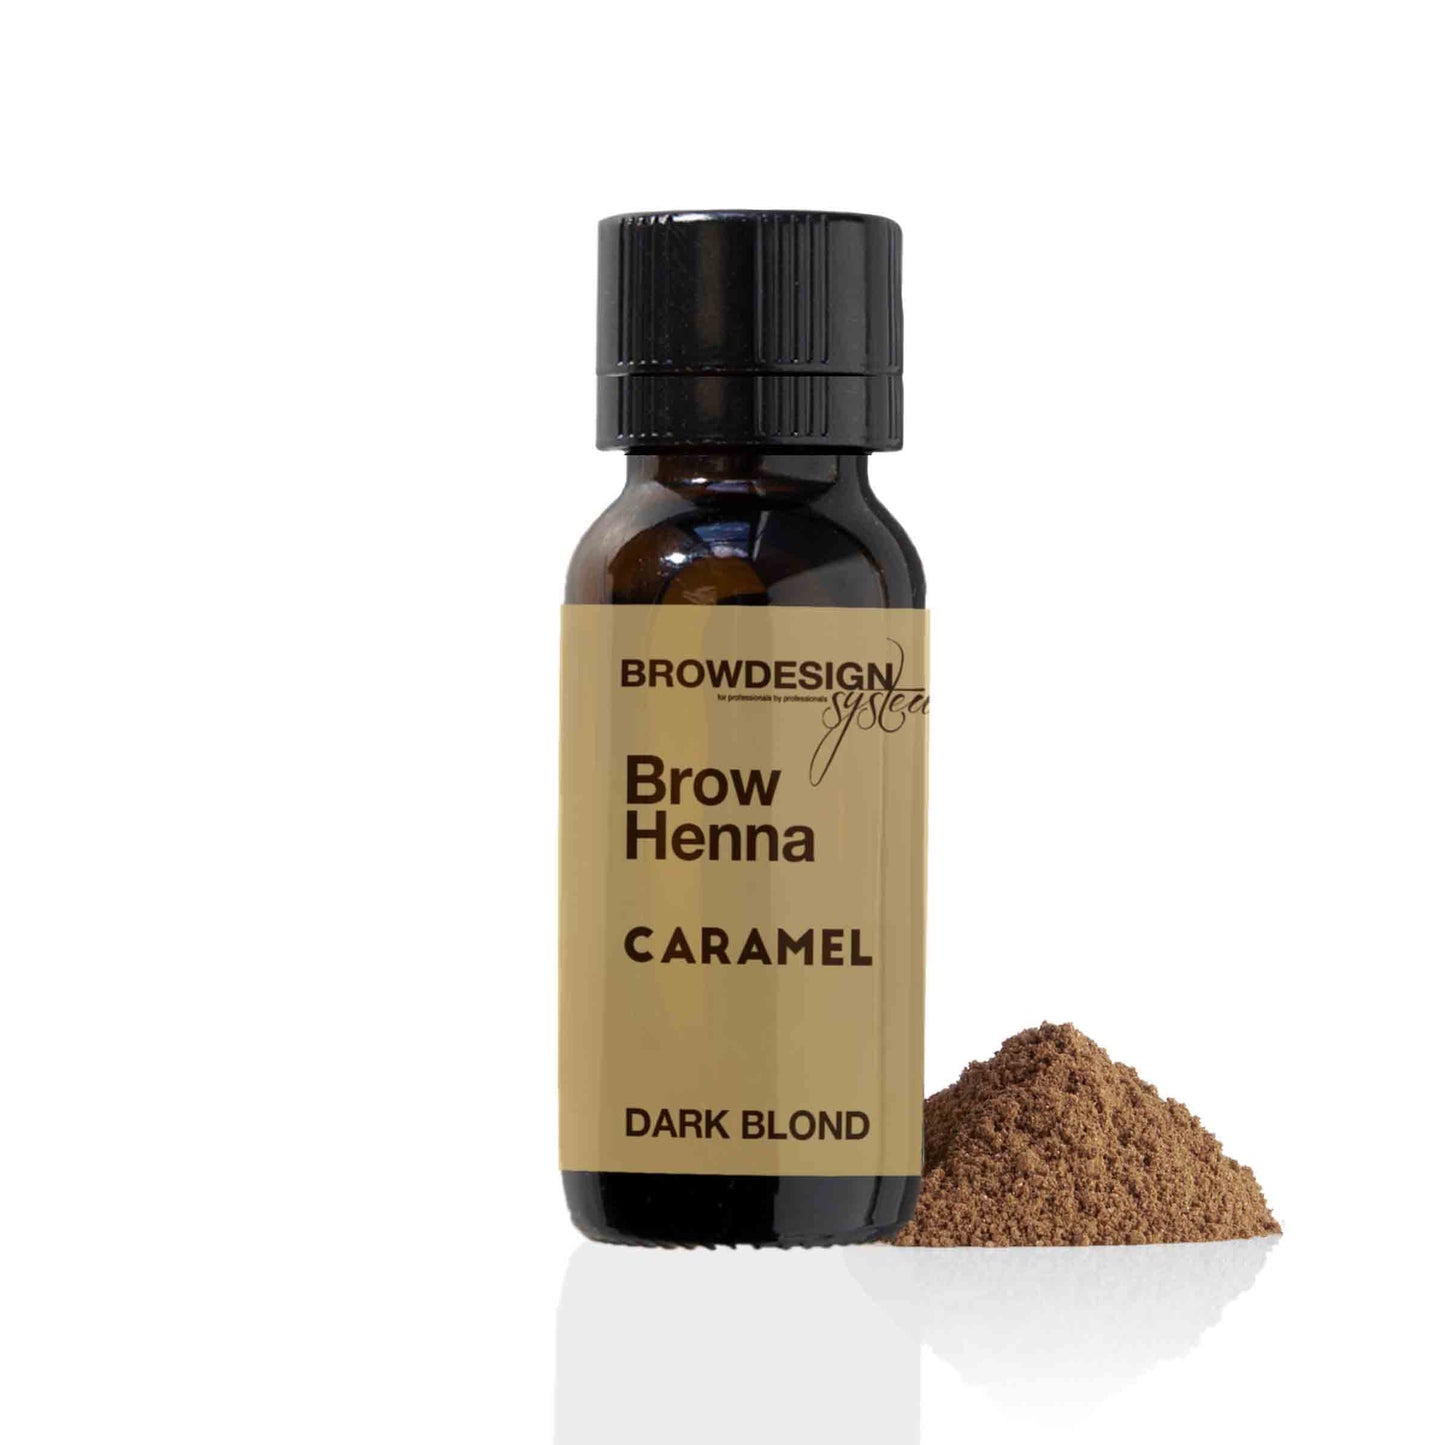 Brow Henna Caramel (Dark Blond)